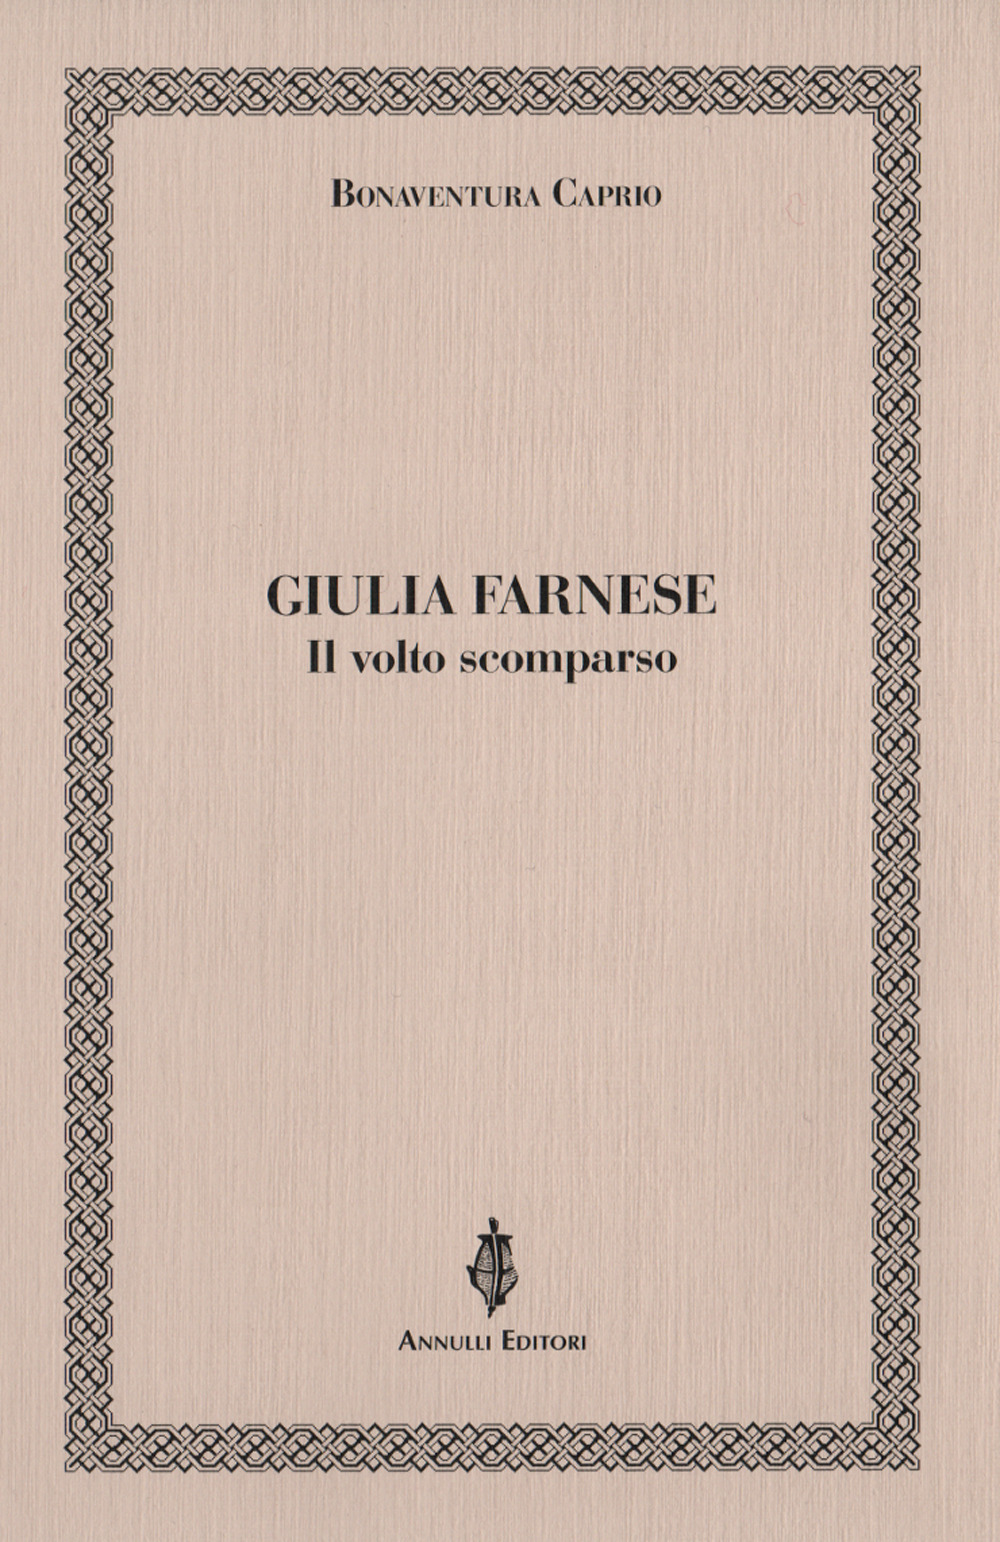 Libri Caprio Bonaventura - Giulia Farnese. Il Volto Scomparso NUOVO SIGILLATO, EDIZIONE DEL 06/12/2019 SUBITO DISPONIBILE